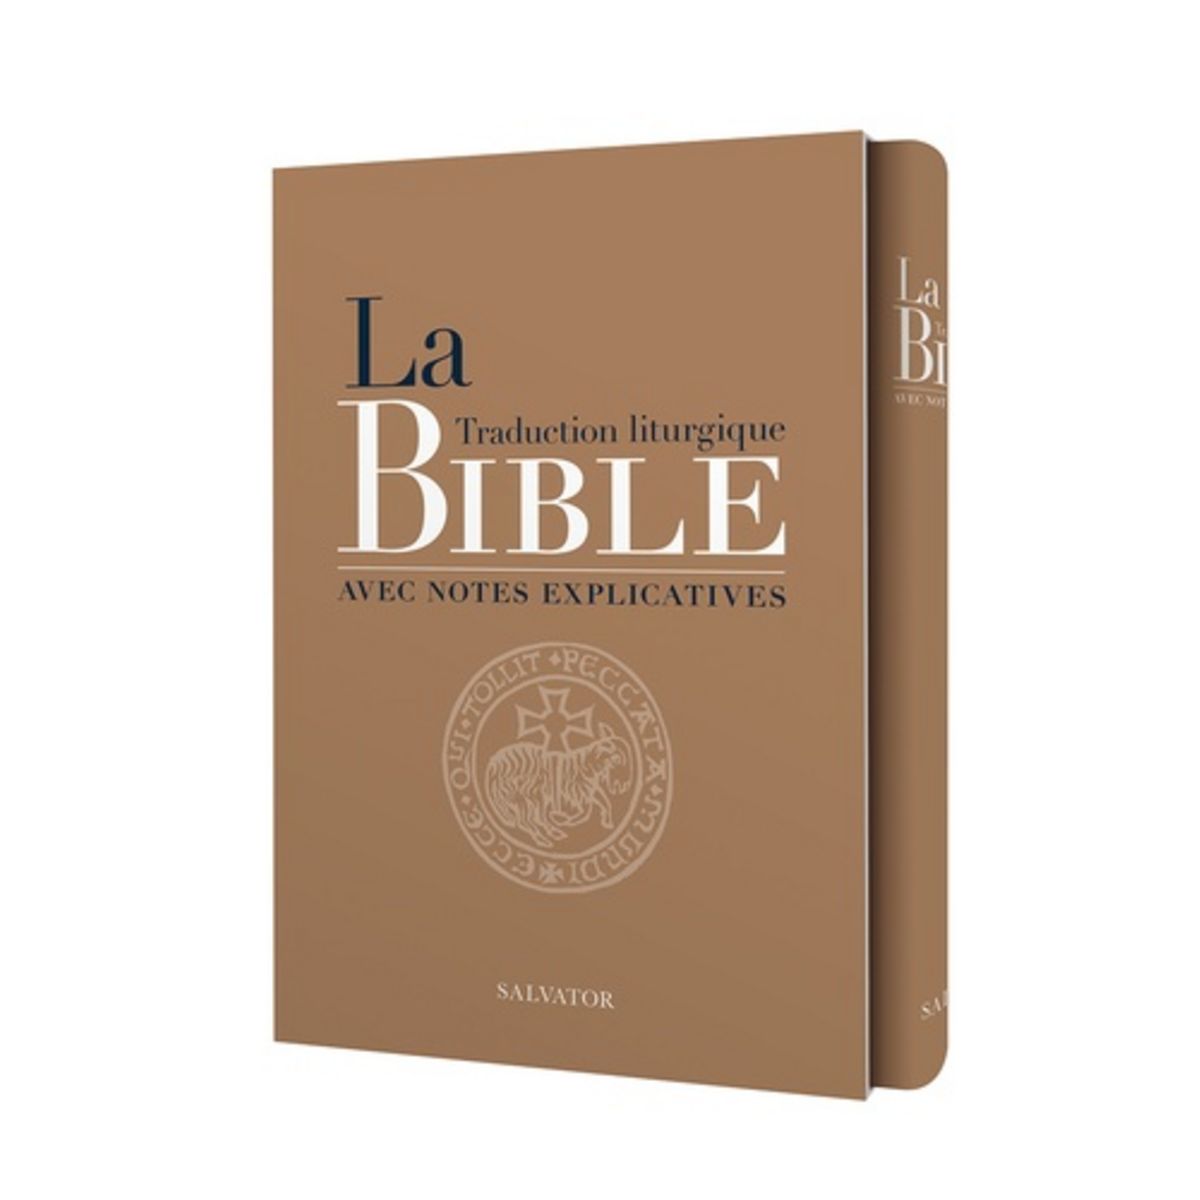  LA TRADUCTION LITURGIQUE DE LA BIBLE AVEC NOTES EXPLICATIVES, AELF